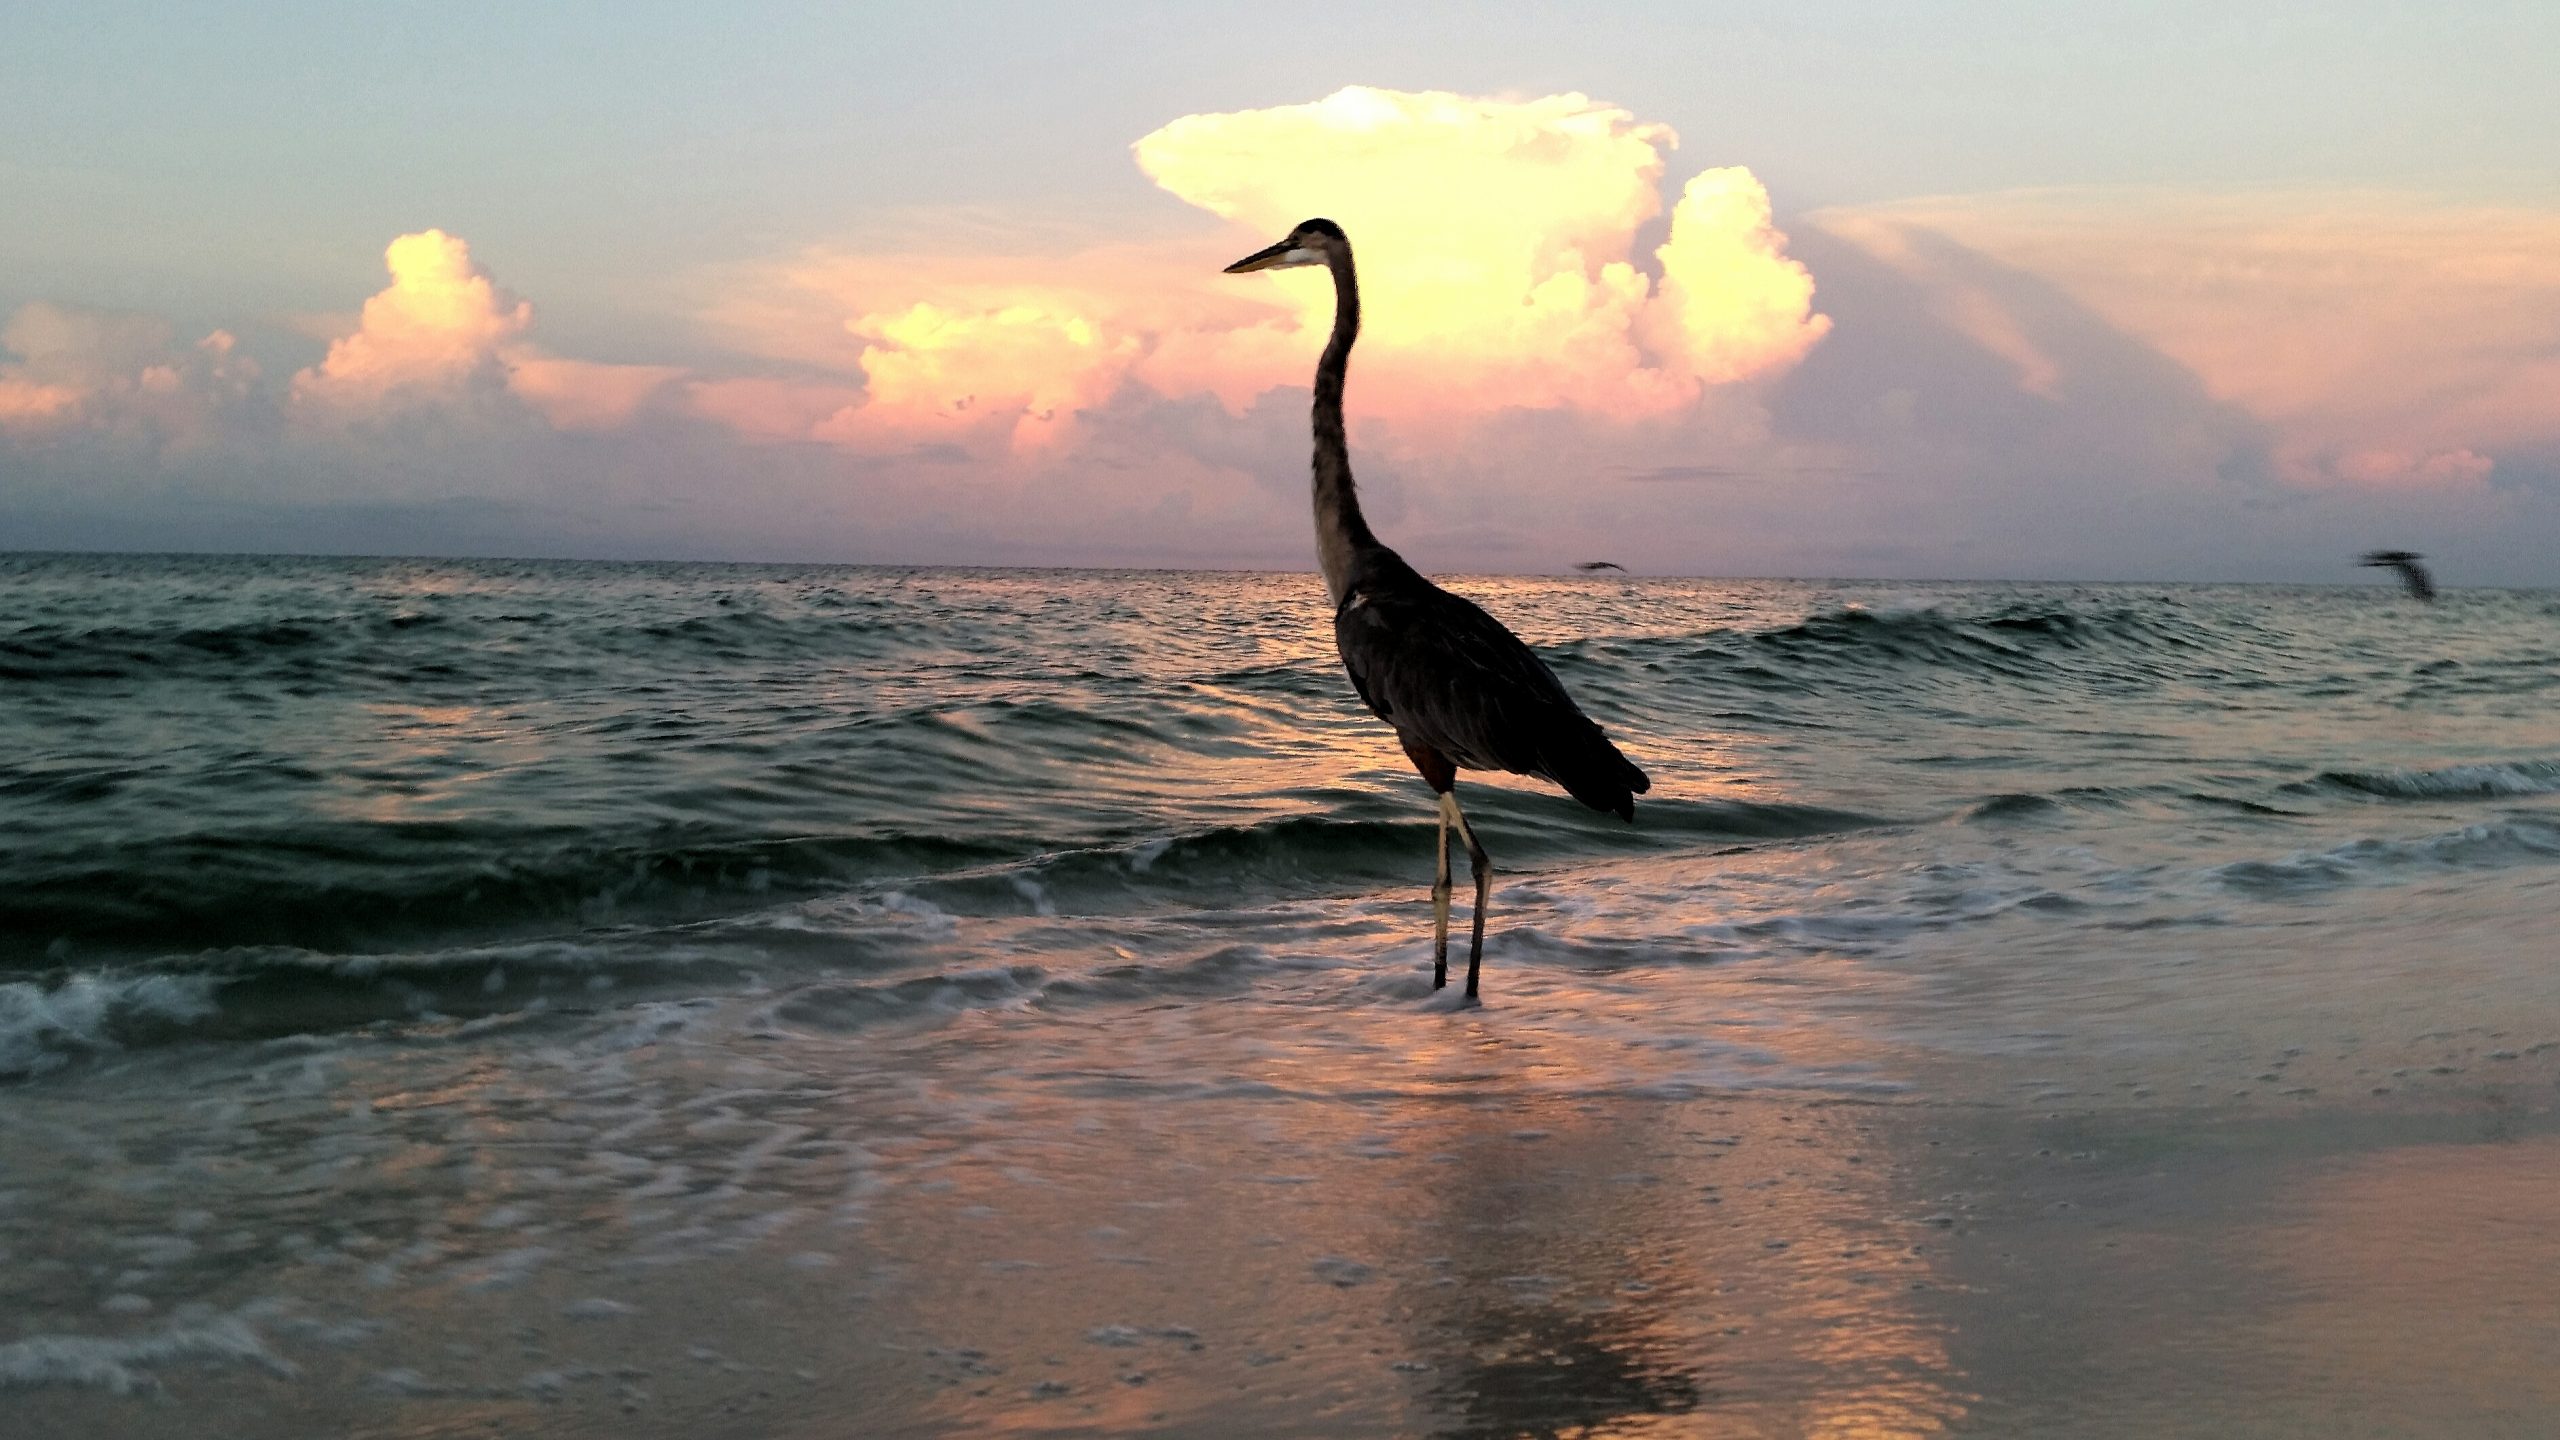 silhouetted-big-bird-on-seashore-at-sunset-watchin-2021-09-03-11-18-59-utc